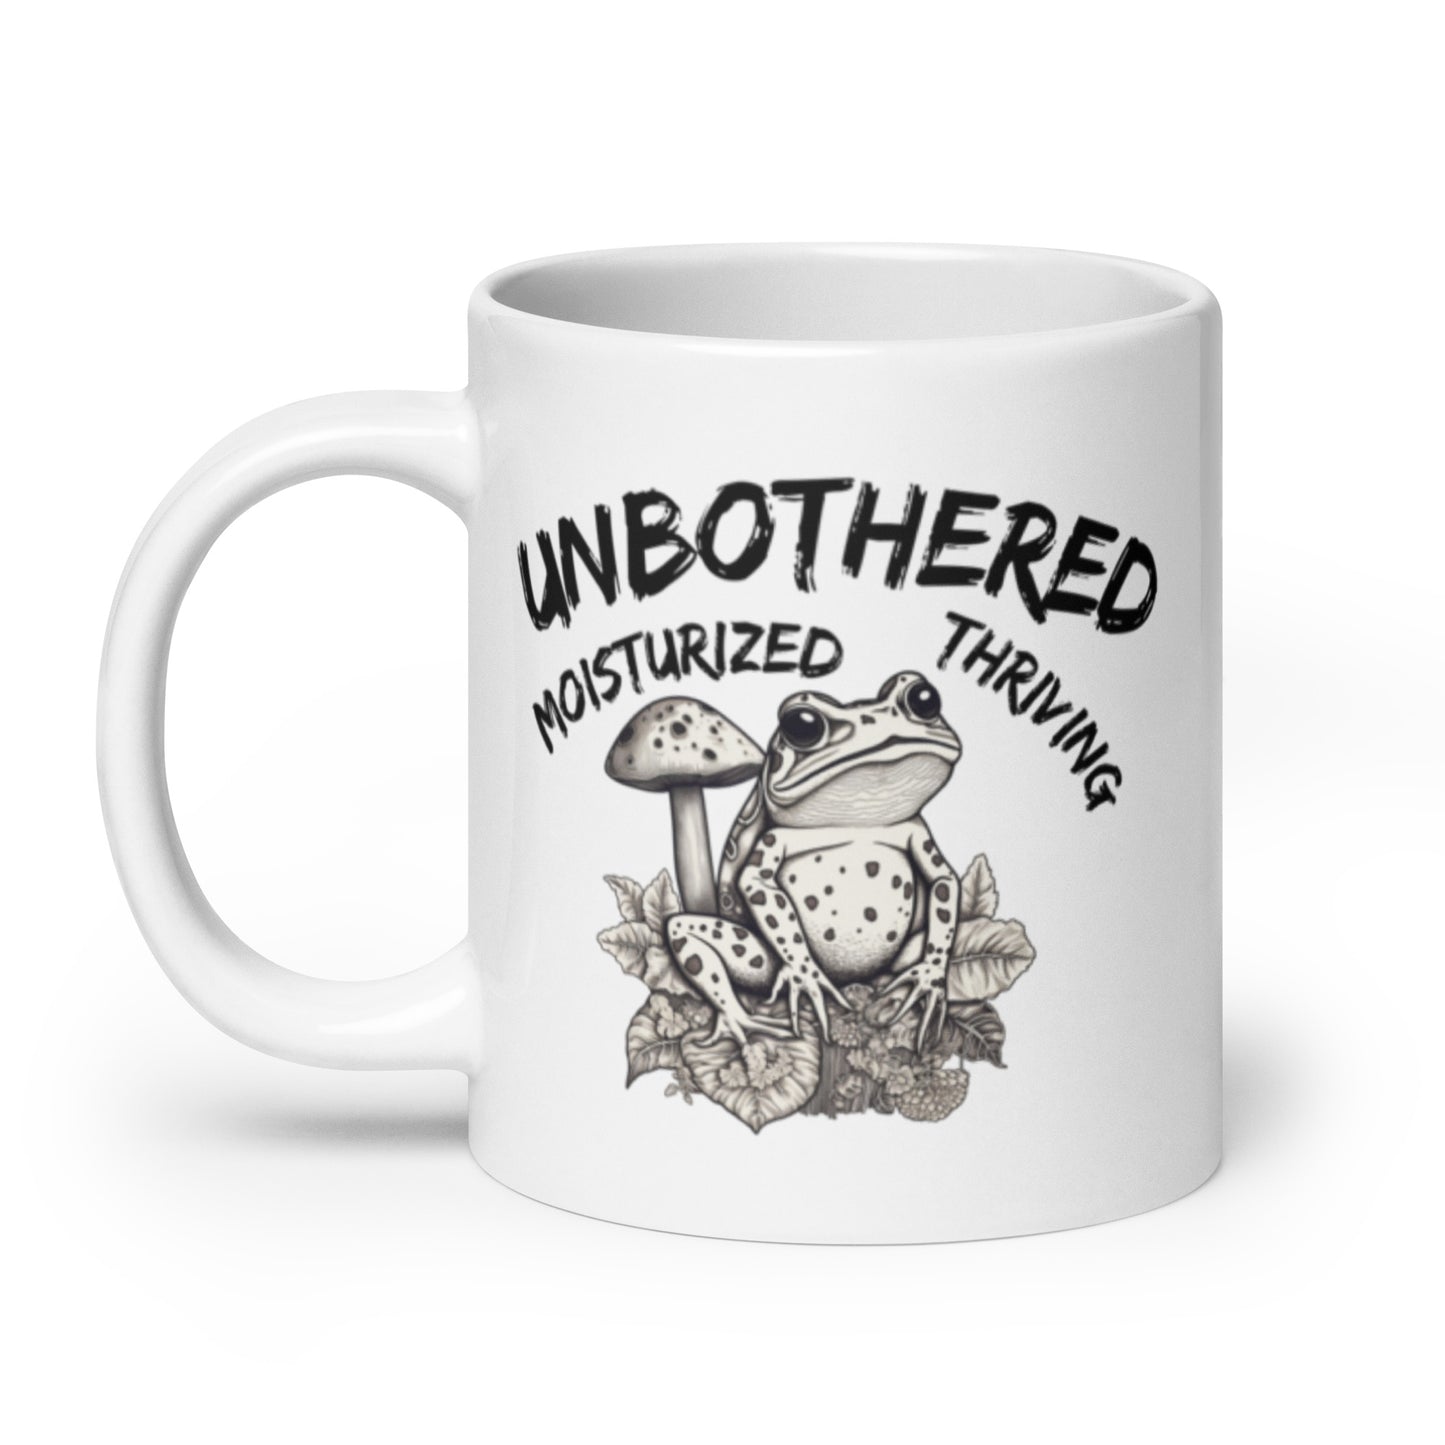 Unbothered, Moisturized, Thriving Mug